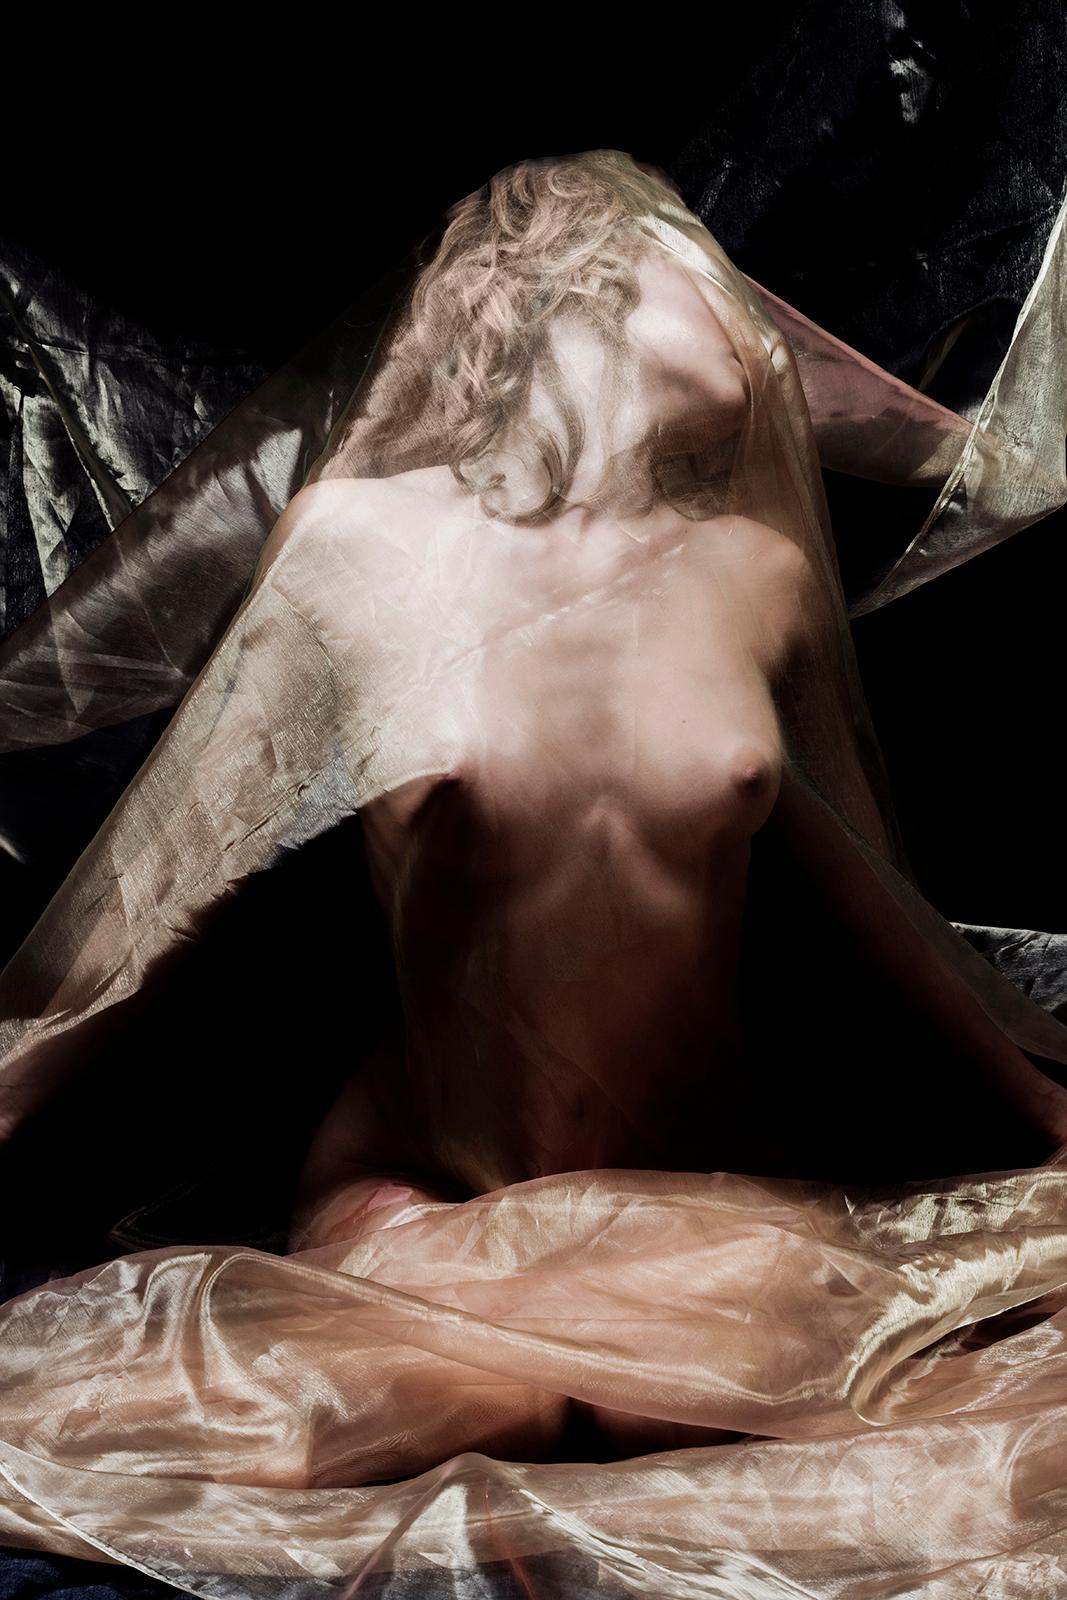 Organza-Traum – signierter sinnlicher Kunstdruck in limitierter Auflage, Modell halb nackt